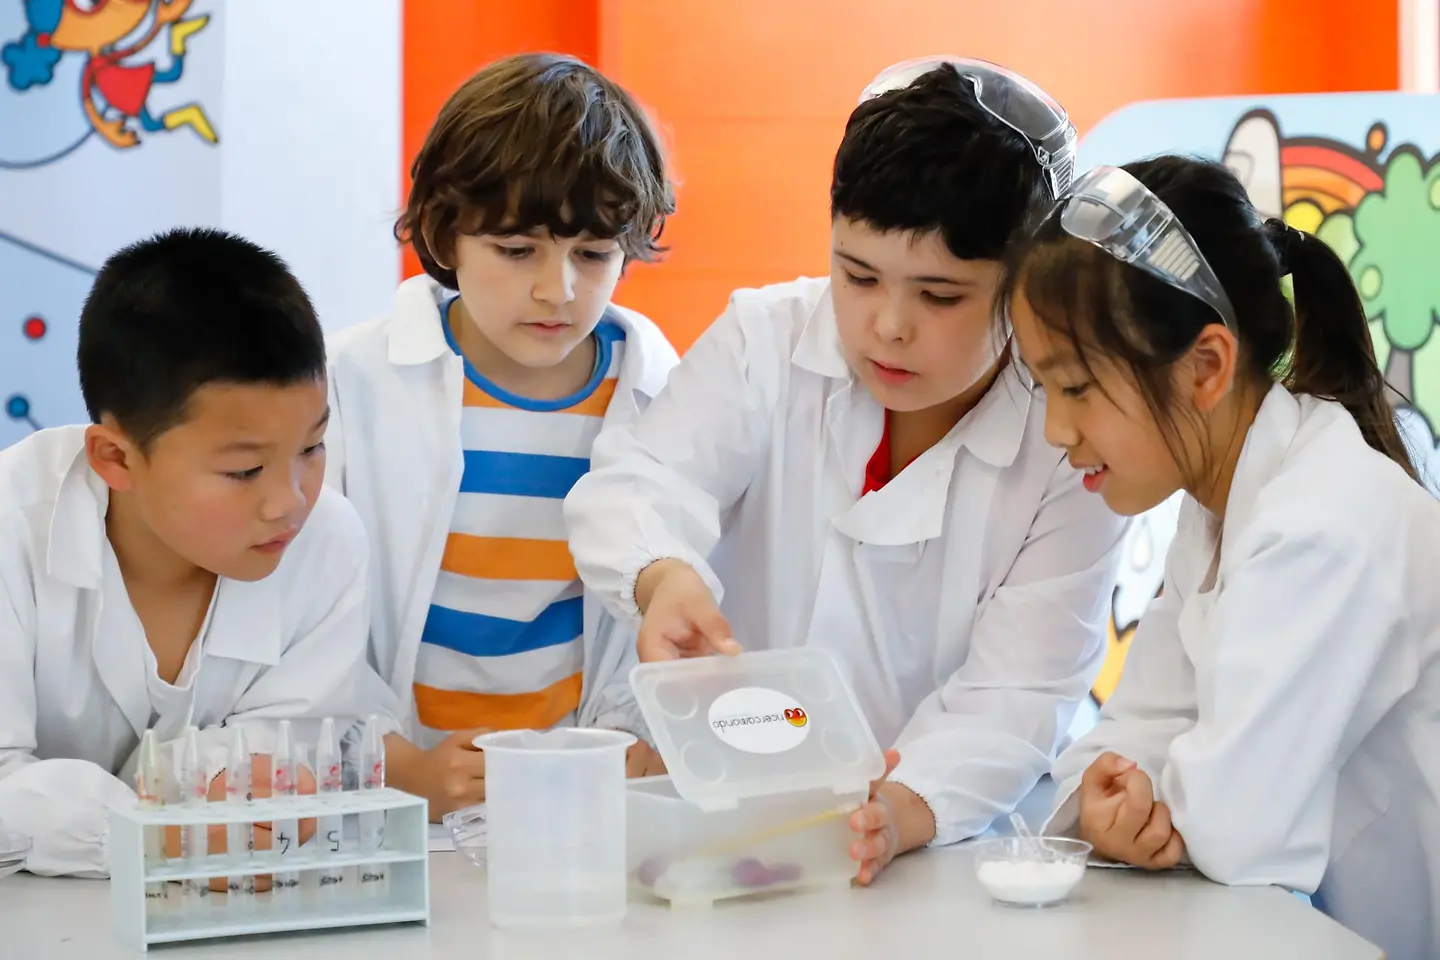 A ricercamondo i bambini diventano ricercatori per un giorno e lavorano con gli strumenti di un vero laboratorio scientifico